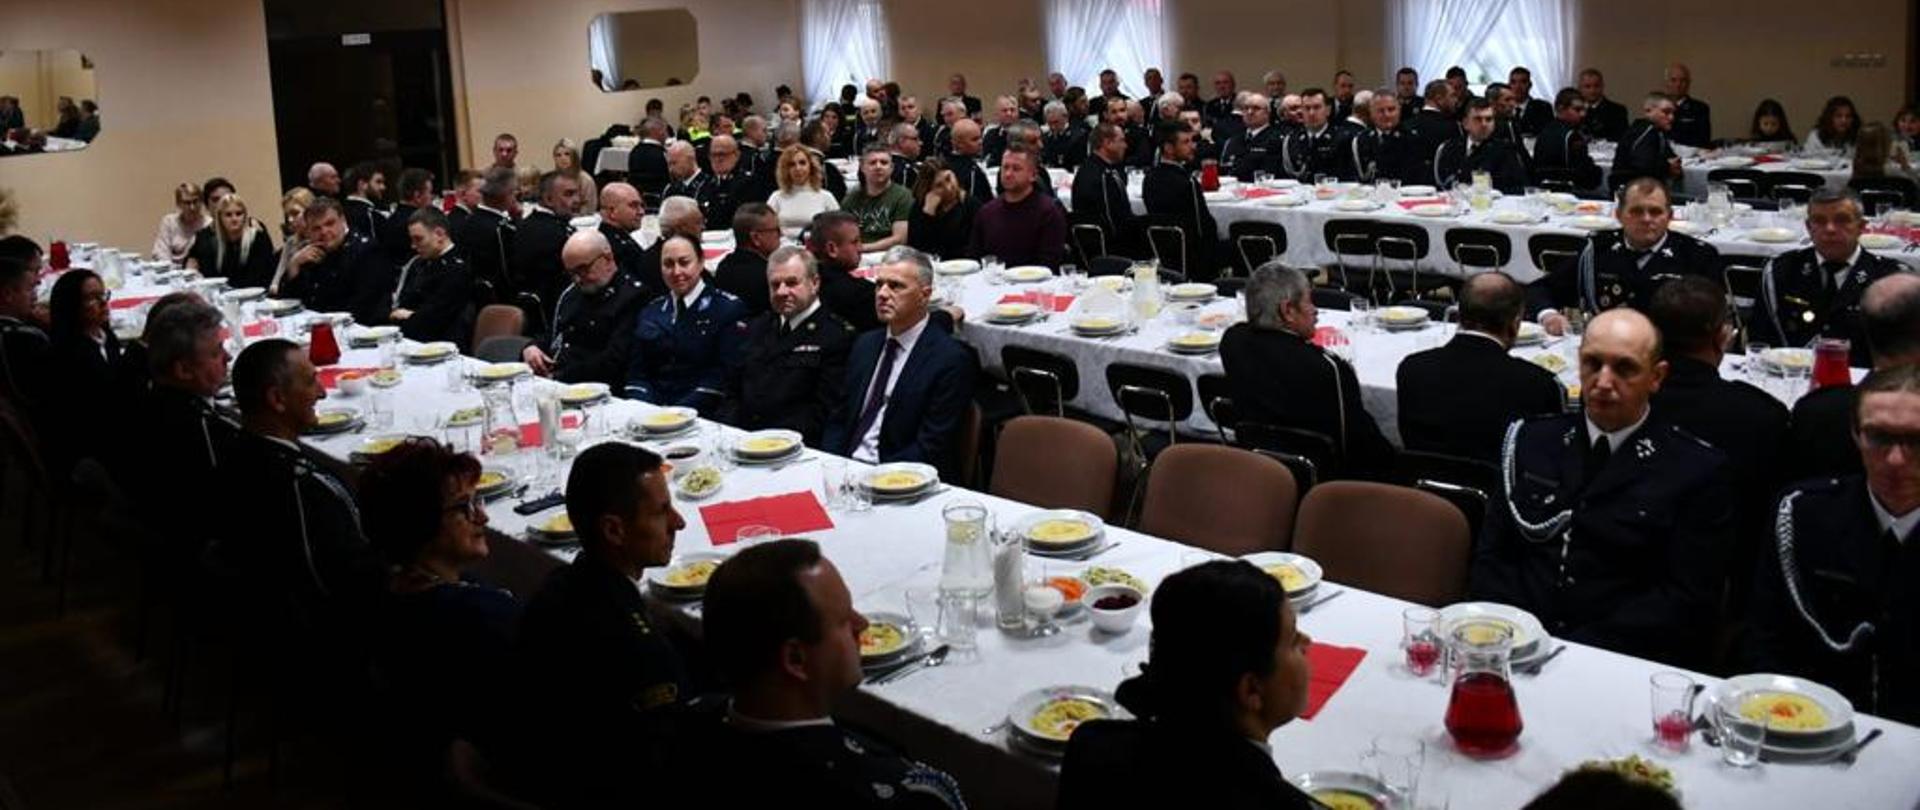 Zdjęcie wykonane wewnątrz sali wiejskiej. Zdjęcie przedstawia strażaków z powiatu wolsztyńskiego zasiadających przy stole. Strażacy ubrani w mundury wyjściowe.